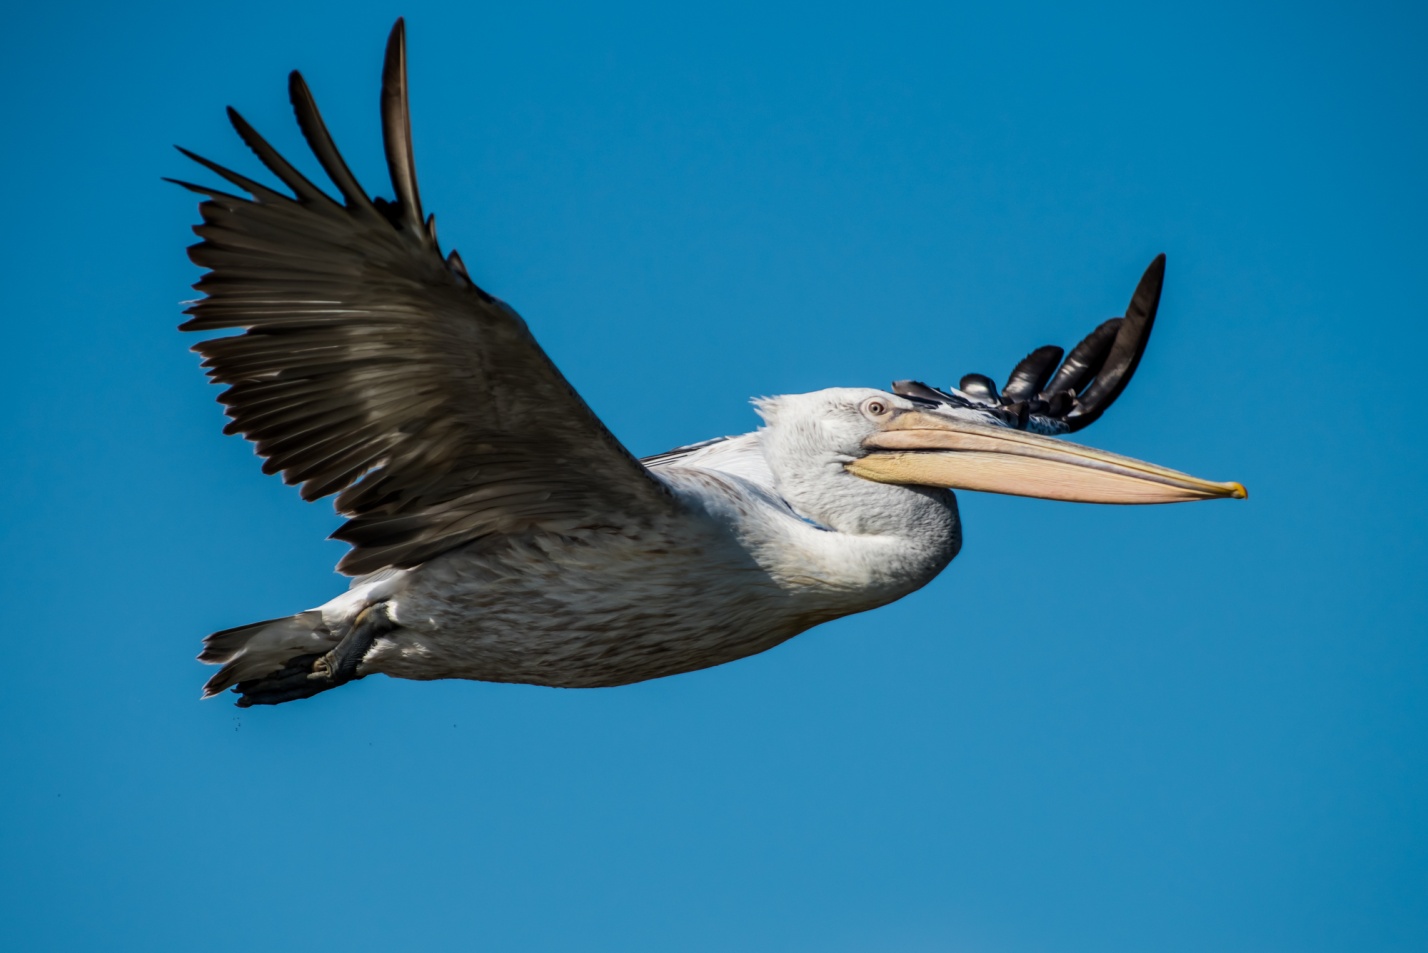 Записки астраханского натуралиста. Пеликаны, летающие гиганты